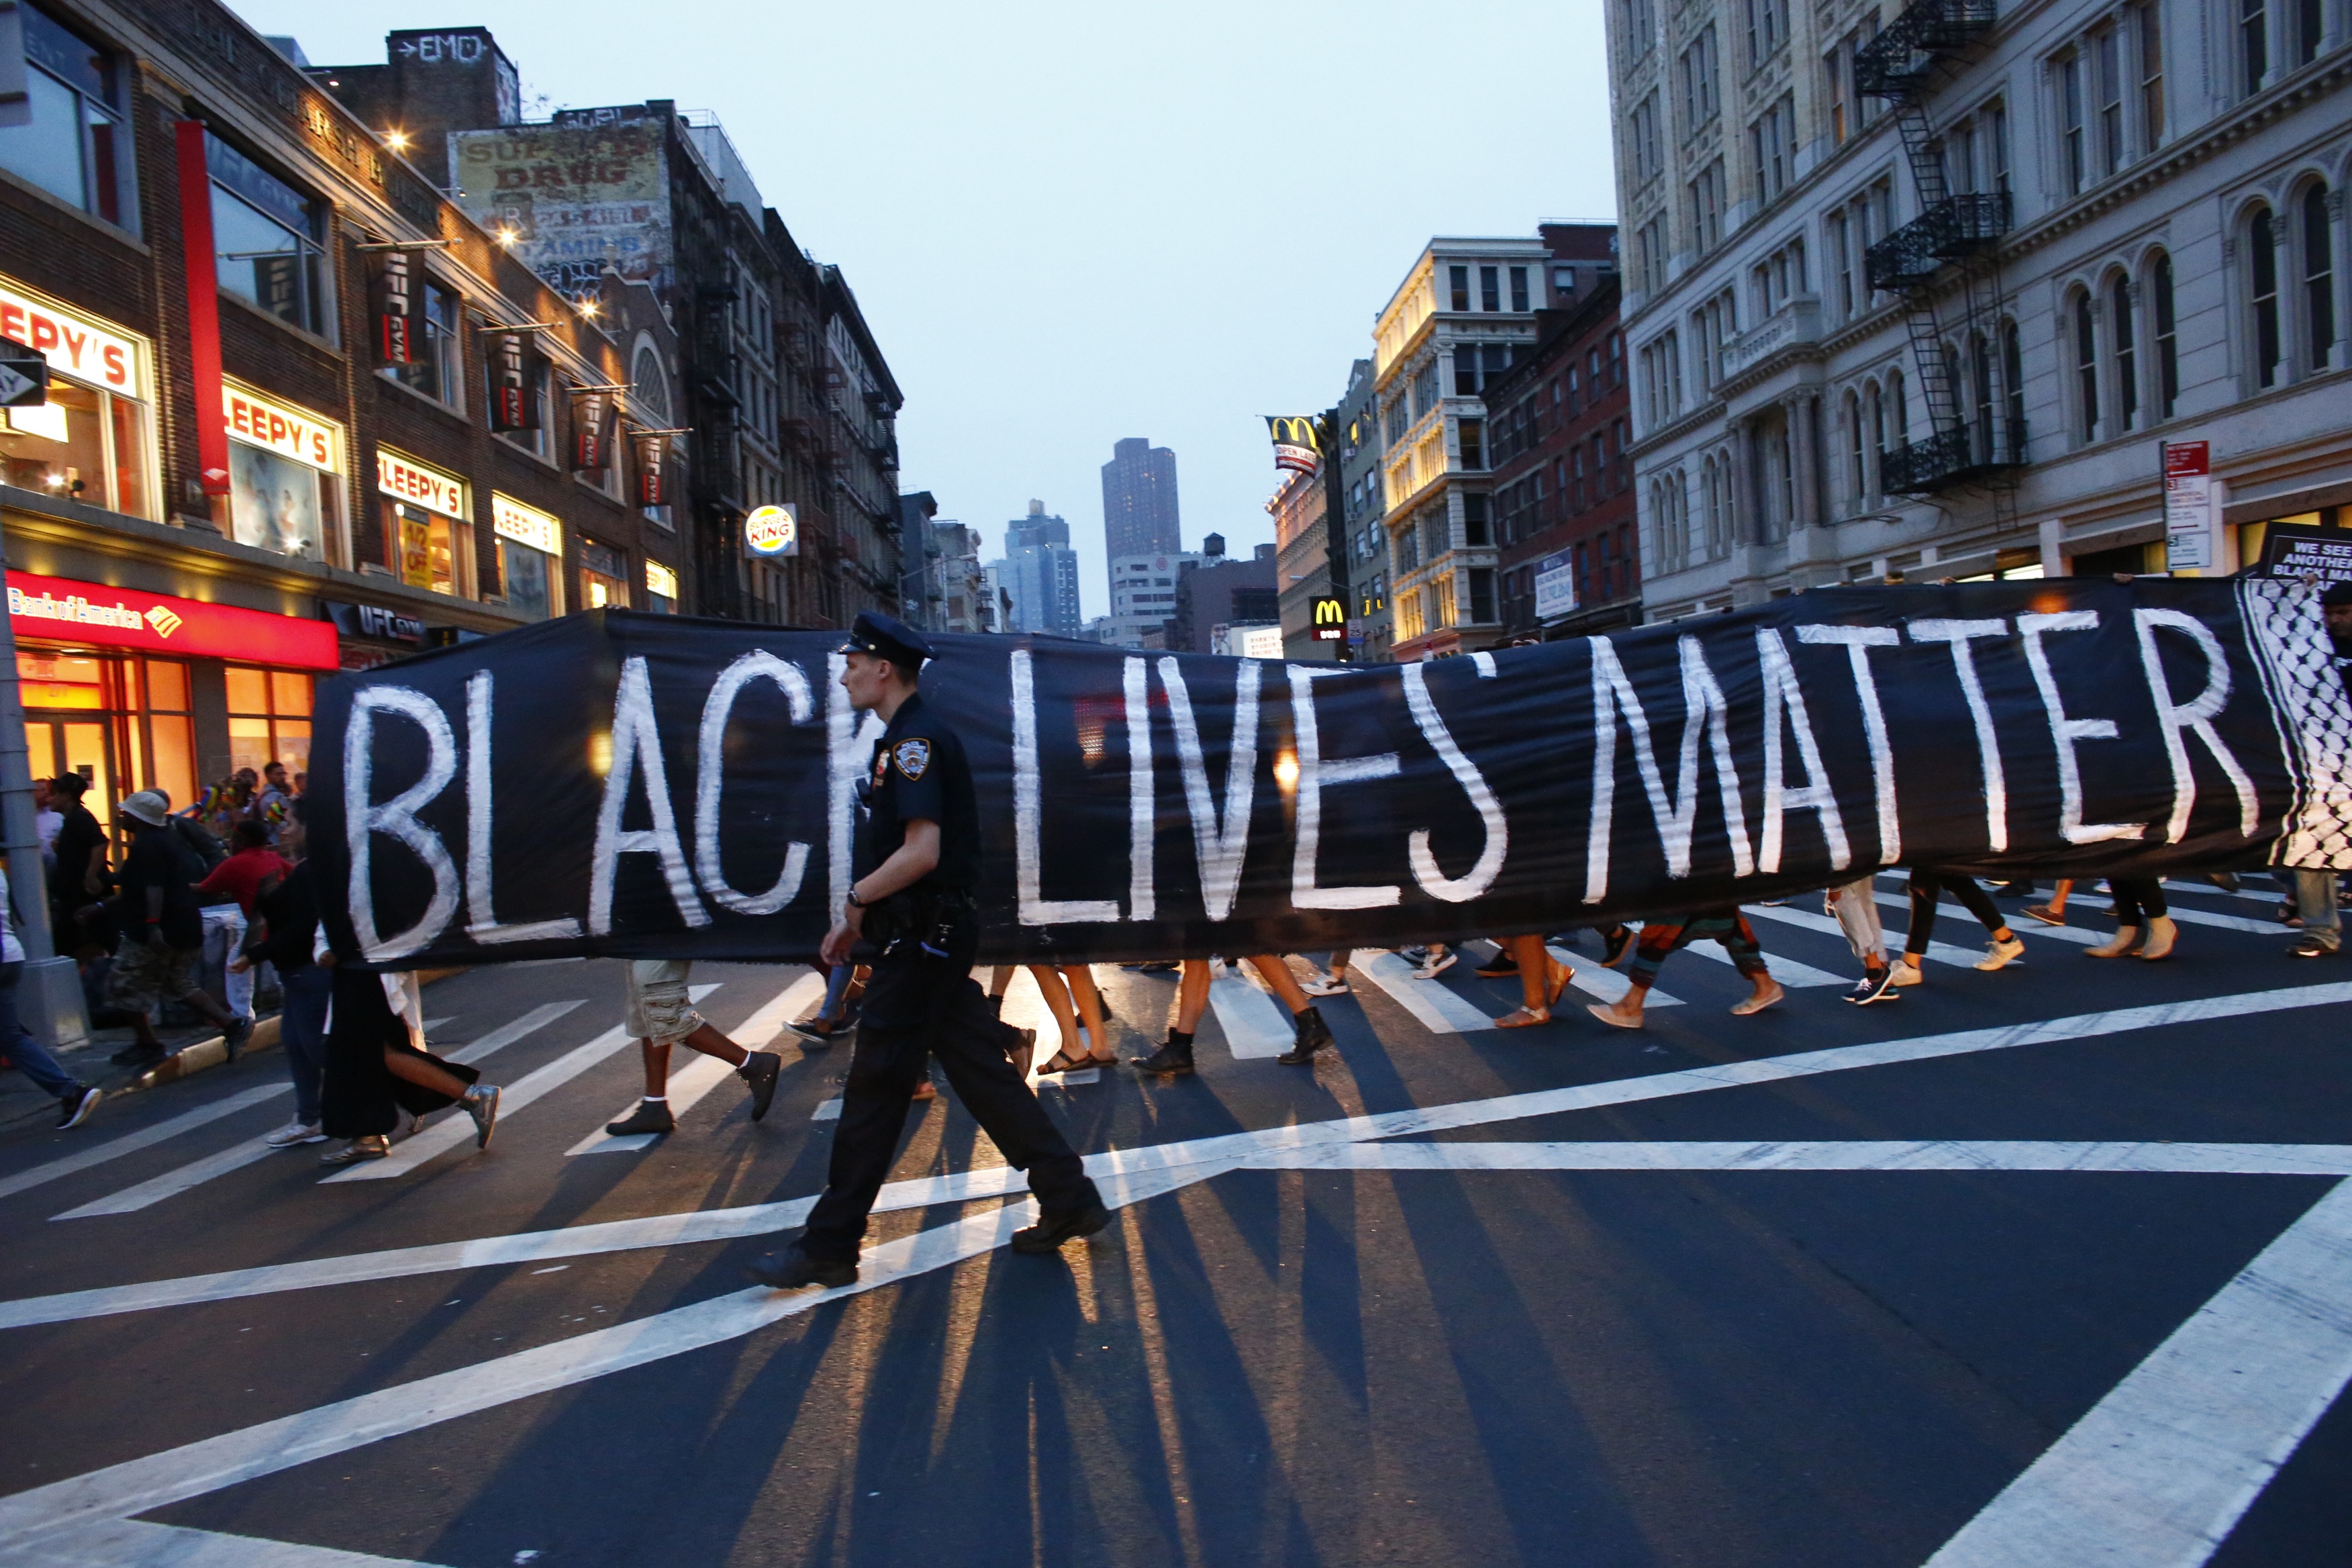 Un oficial de policía patrulla durante una protesta en apoyo del movimiento Black lives matter en Nueva York el 9 de julio de 2016